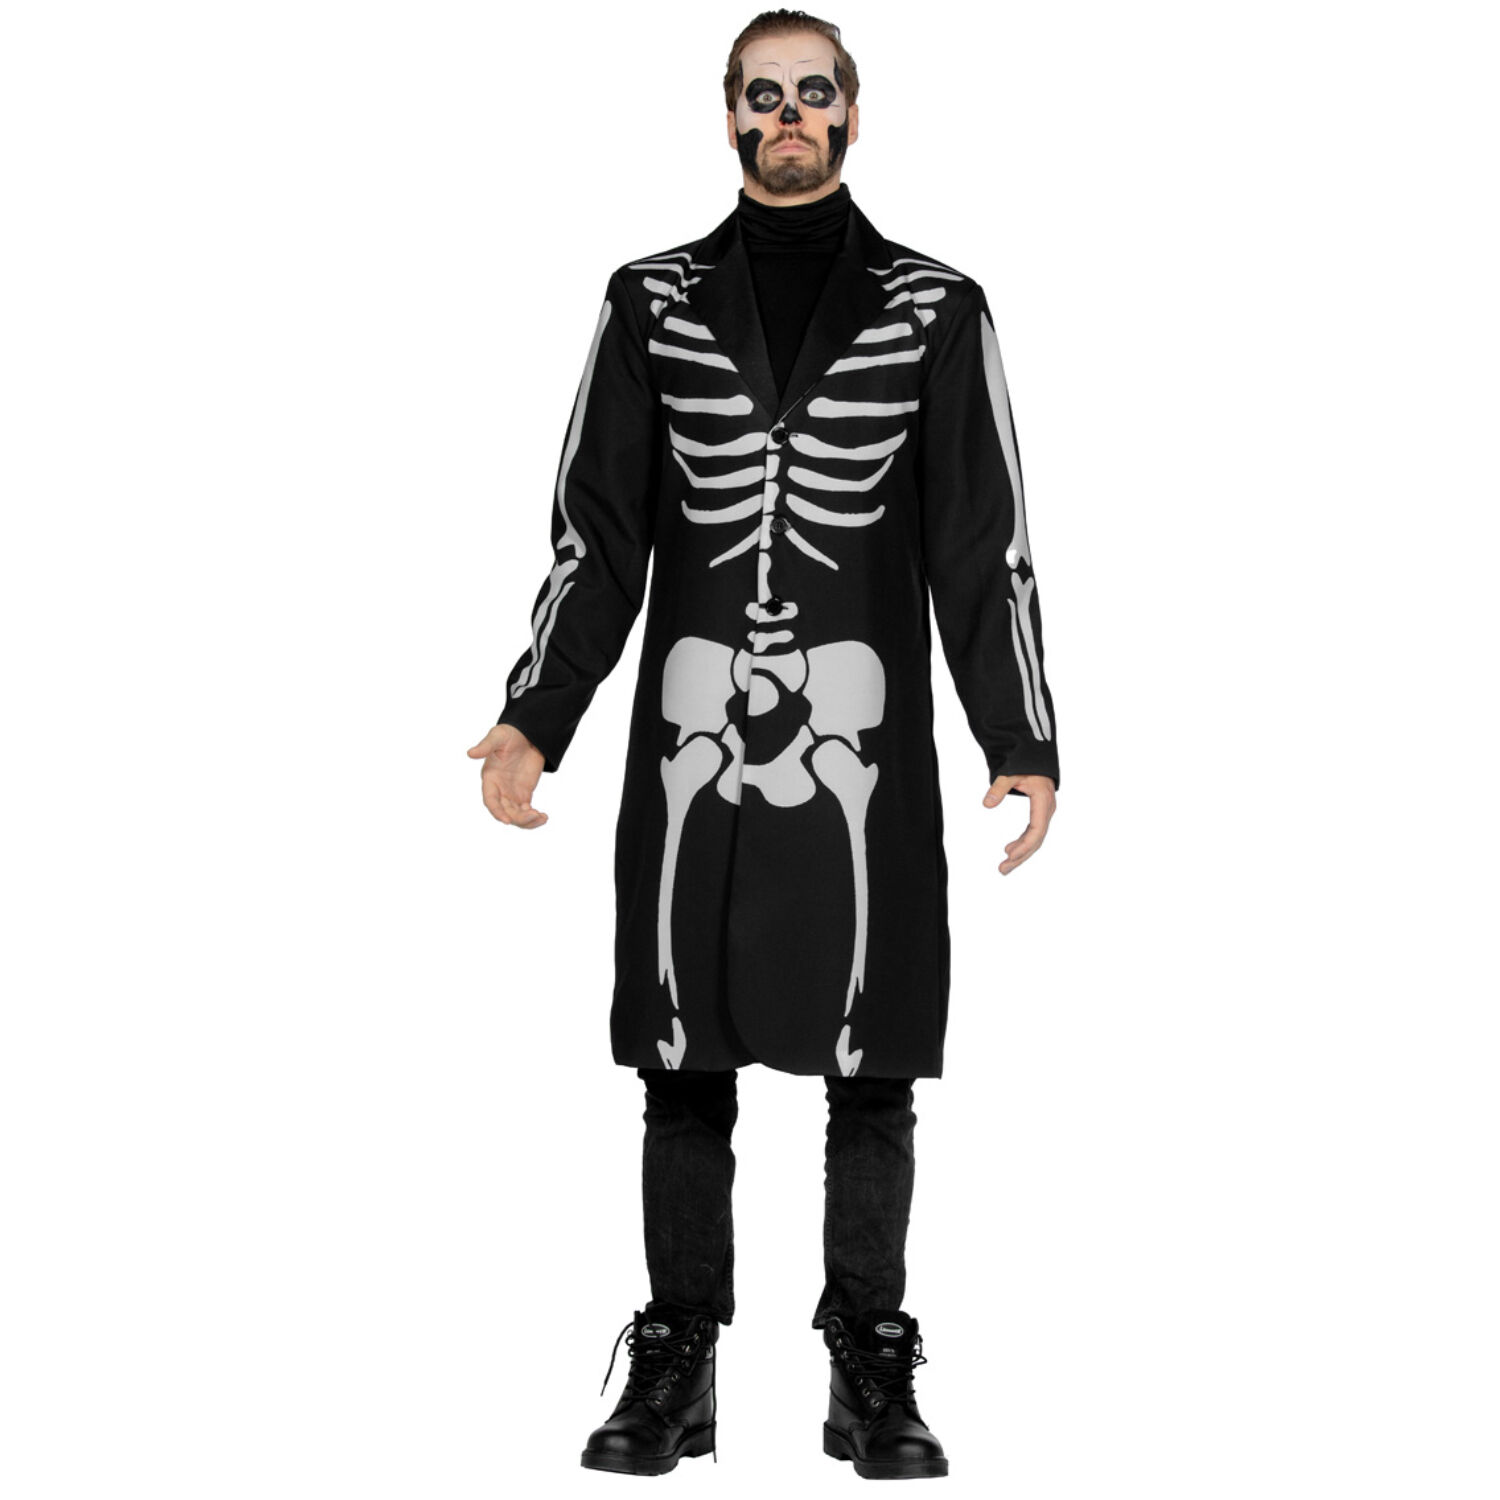 NEU Herren-Kostm Skelett-Mantel, schwarz mit Knochendruck, Gr. S